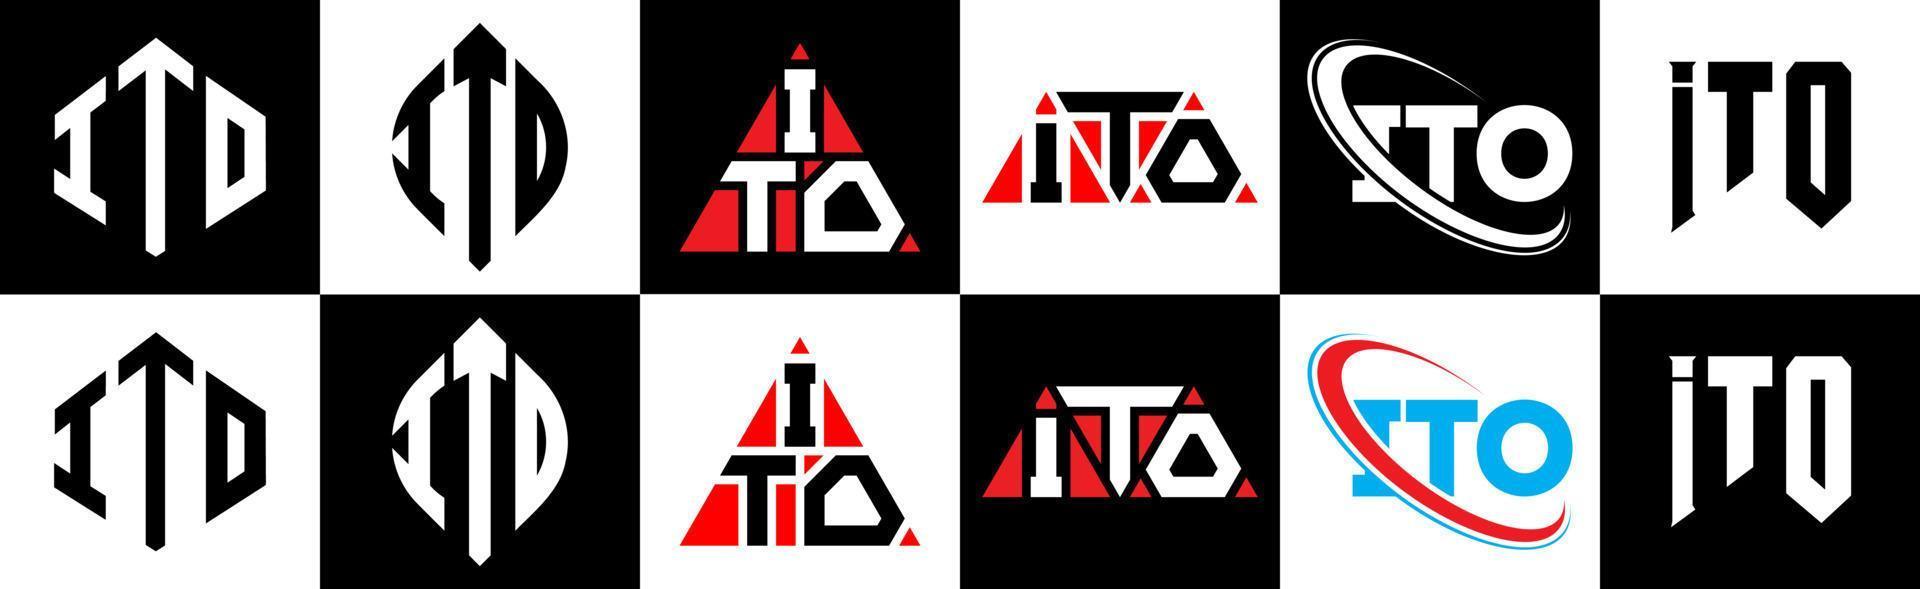 ito brief logo ontwerp in zes stijl. ito veelhoek, cirkel, driehoek, zeshoek, vlak en gemakkelijk stijl met zwart en wit kleur variatie brief logo reeks in een tekengebied. ito minimalistische en klassiek logo vector